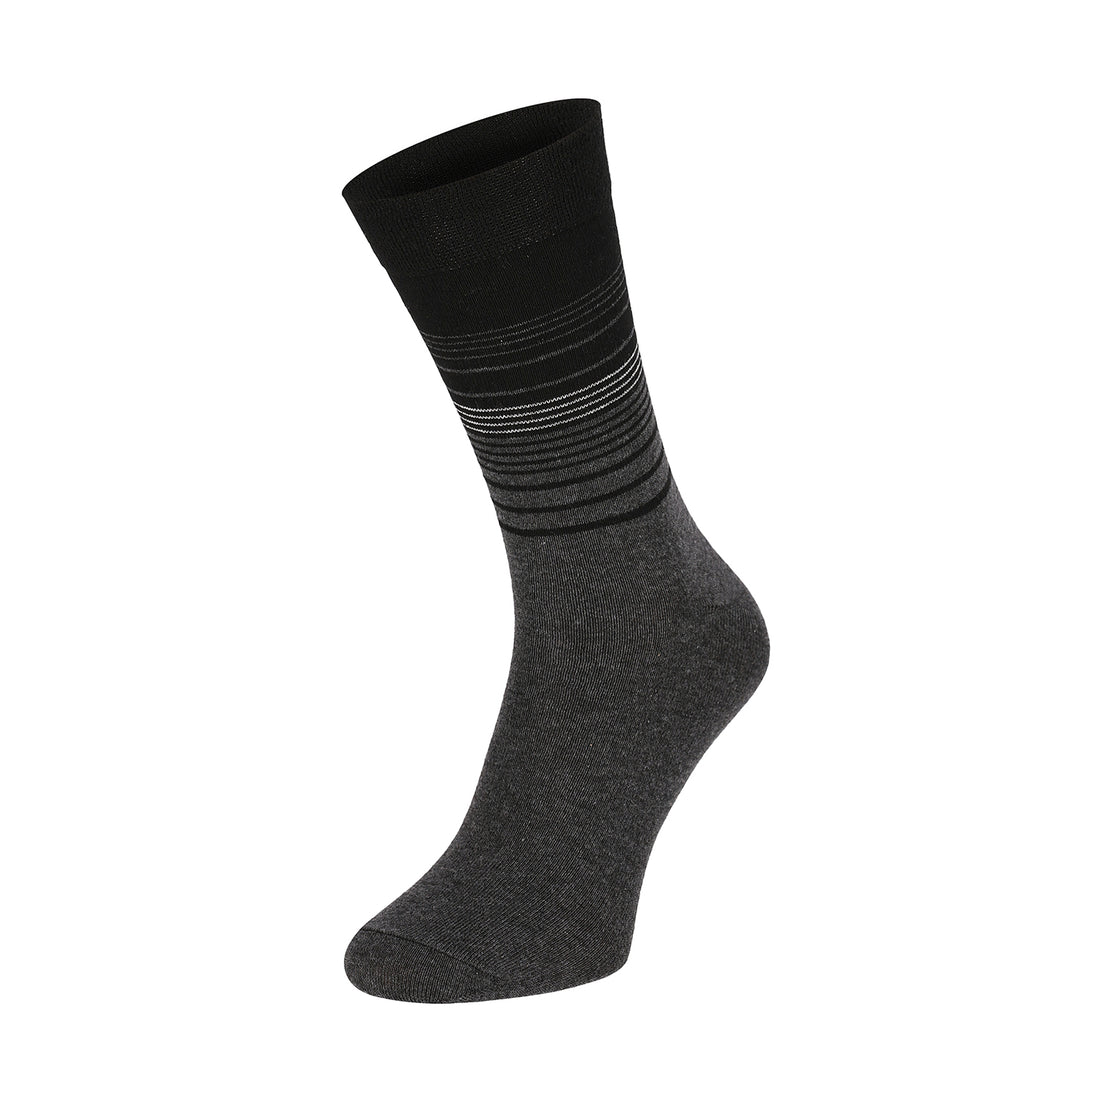 ChiliLifestyle Socken Streifen Design 10 Paar, Damen, Herren, Baumwolle